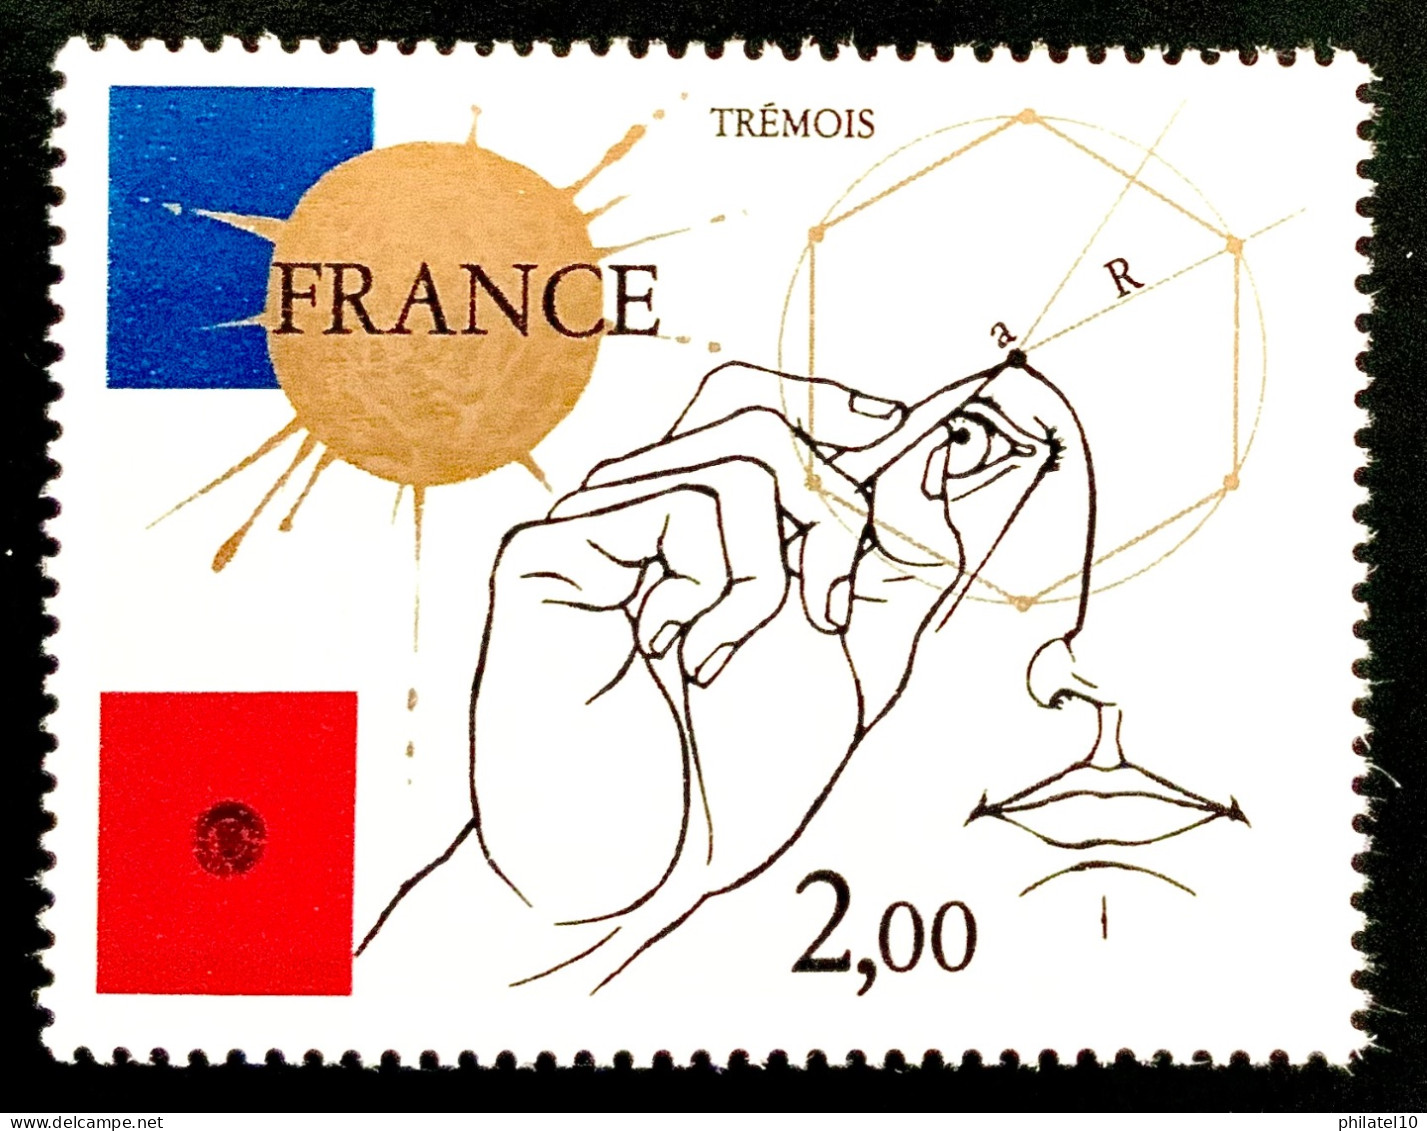 1981 FRANCE N 2141 TREMOIS 2,00F - NEUF** - Nuevos